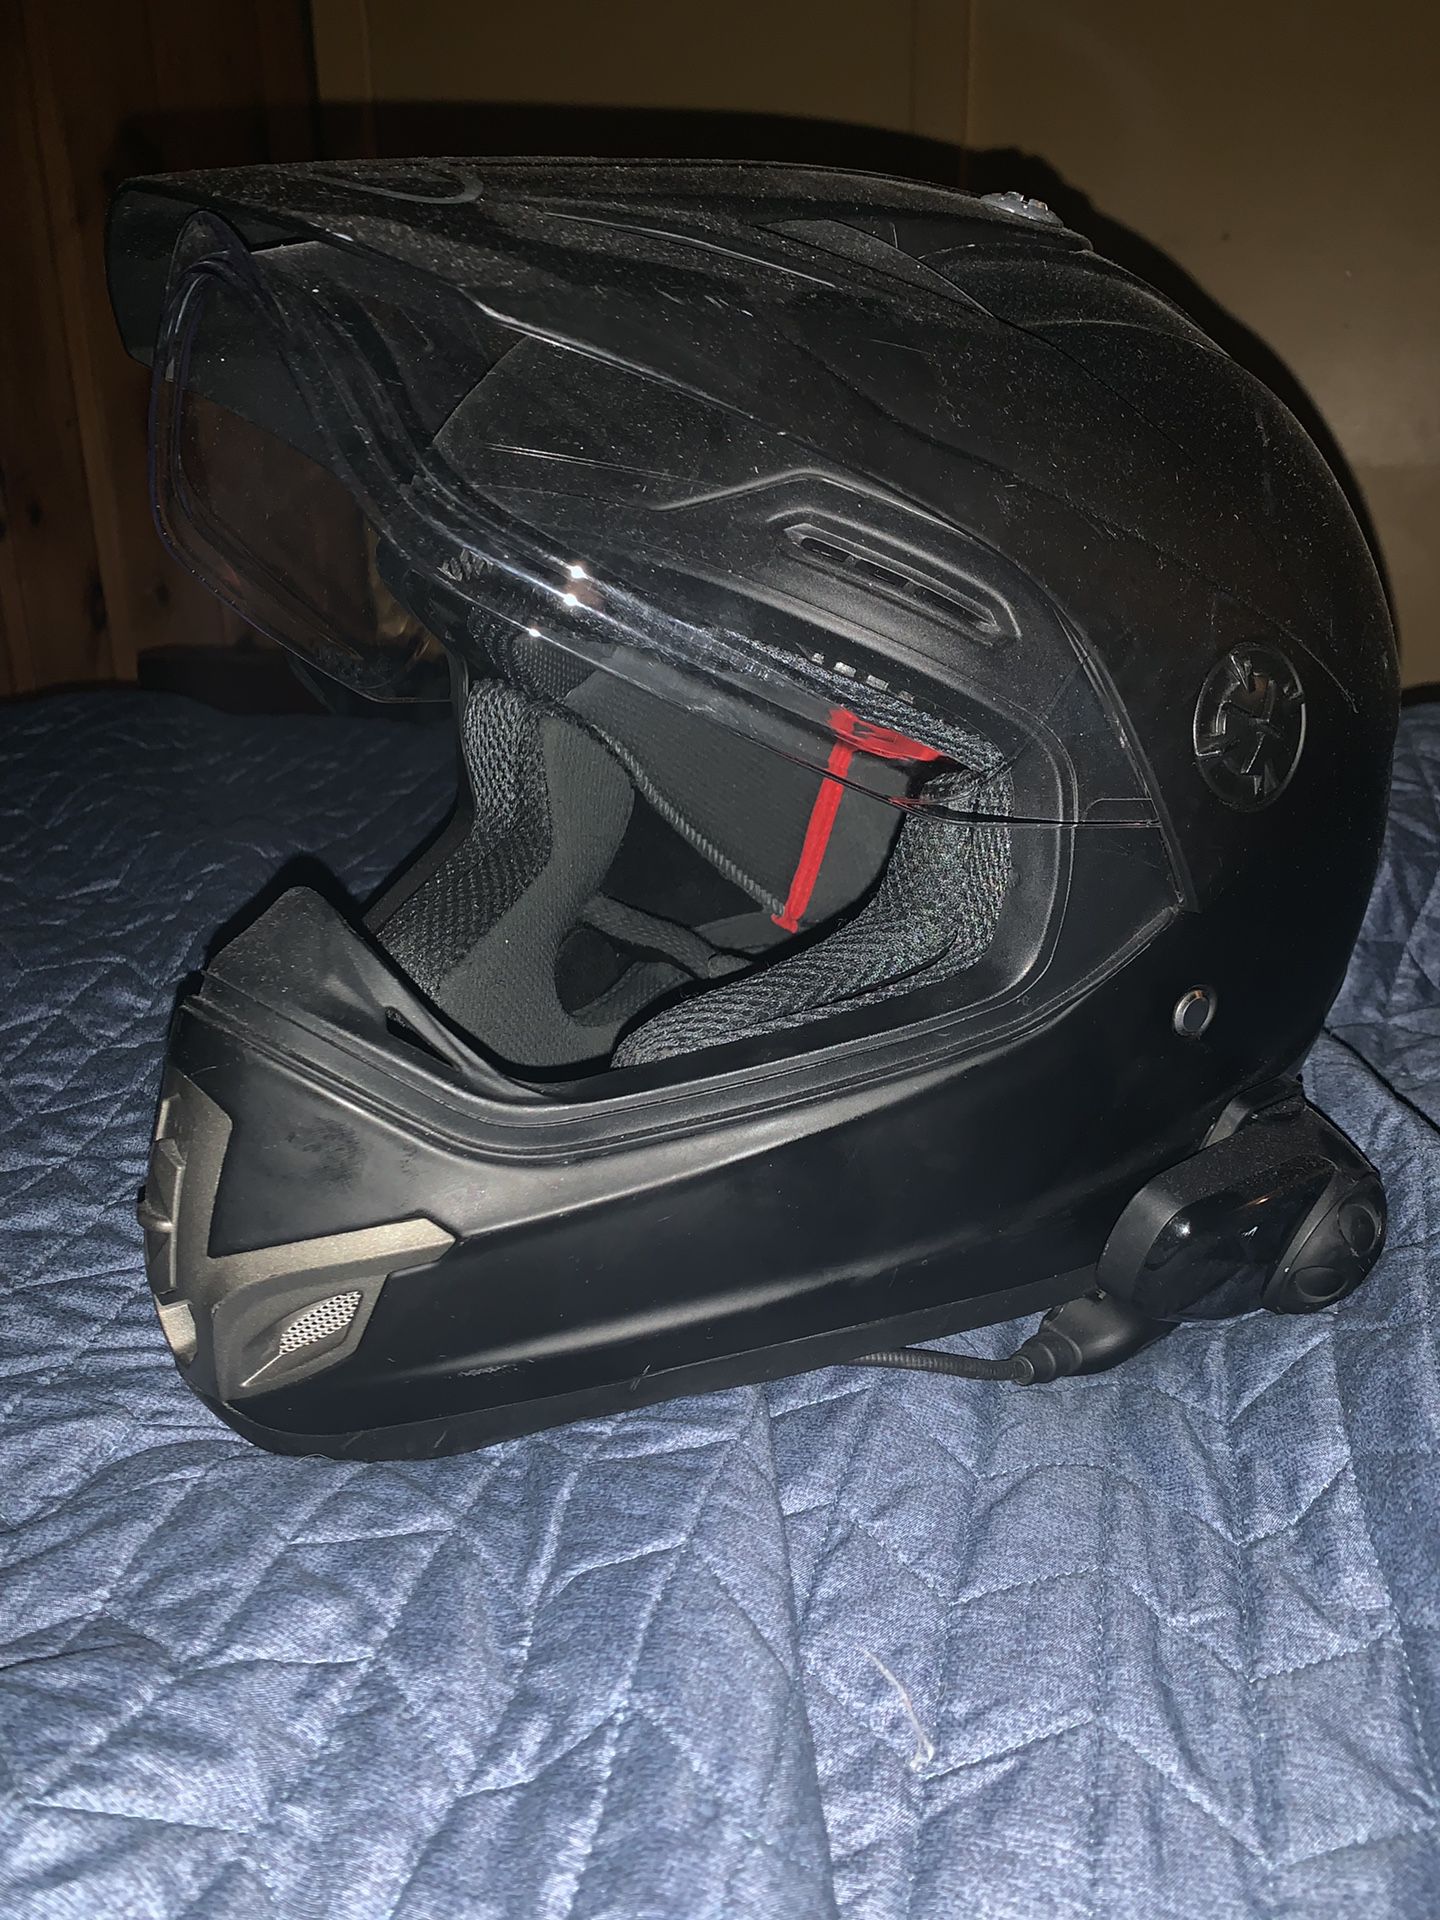 BILT helmet, SEÑA Bluetooth size XL